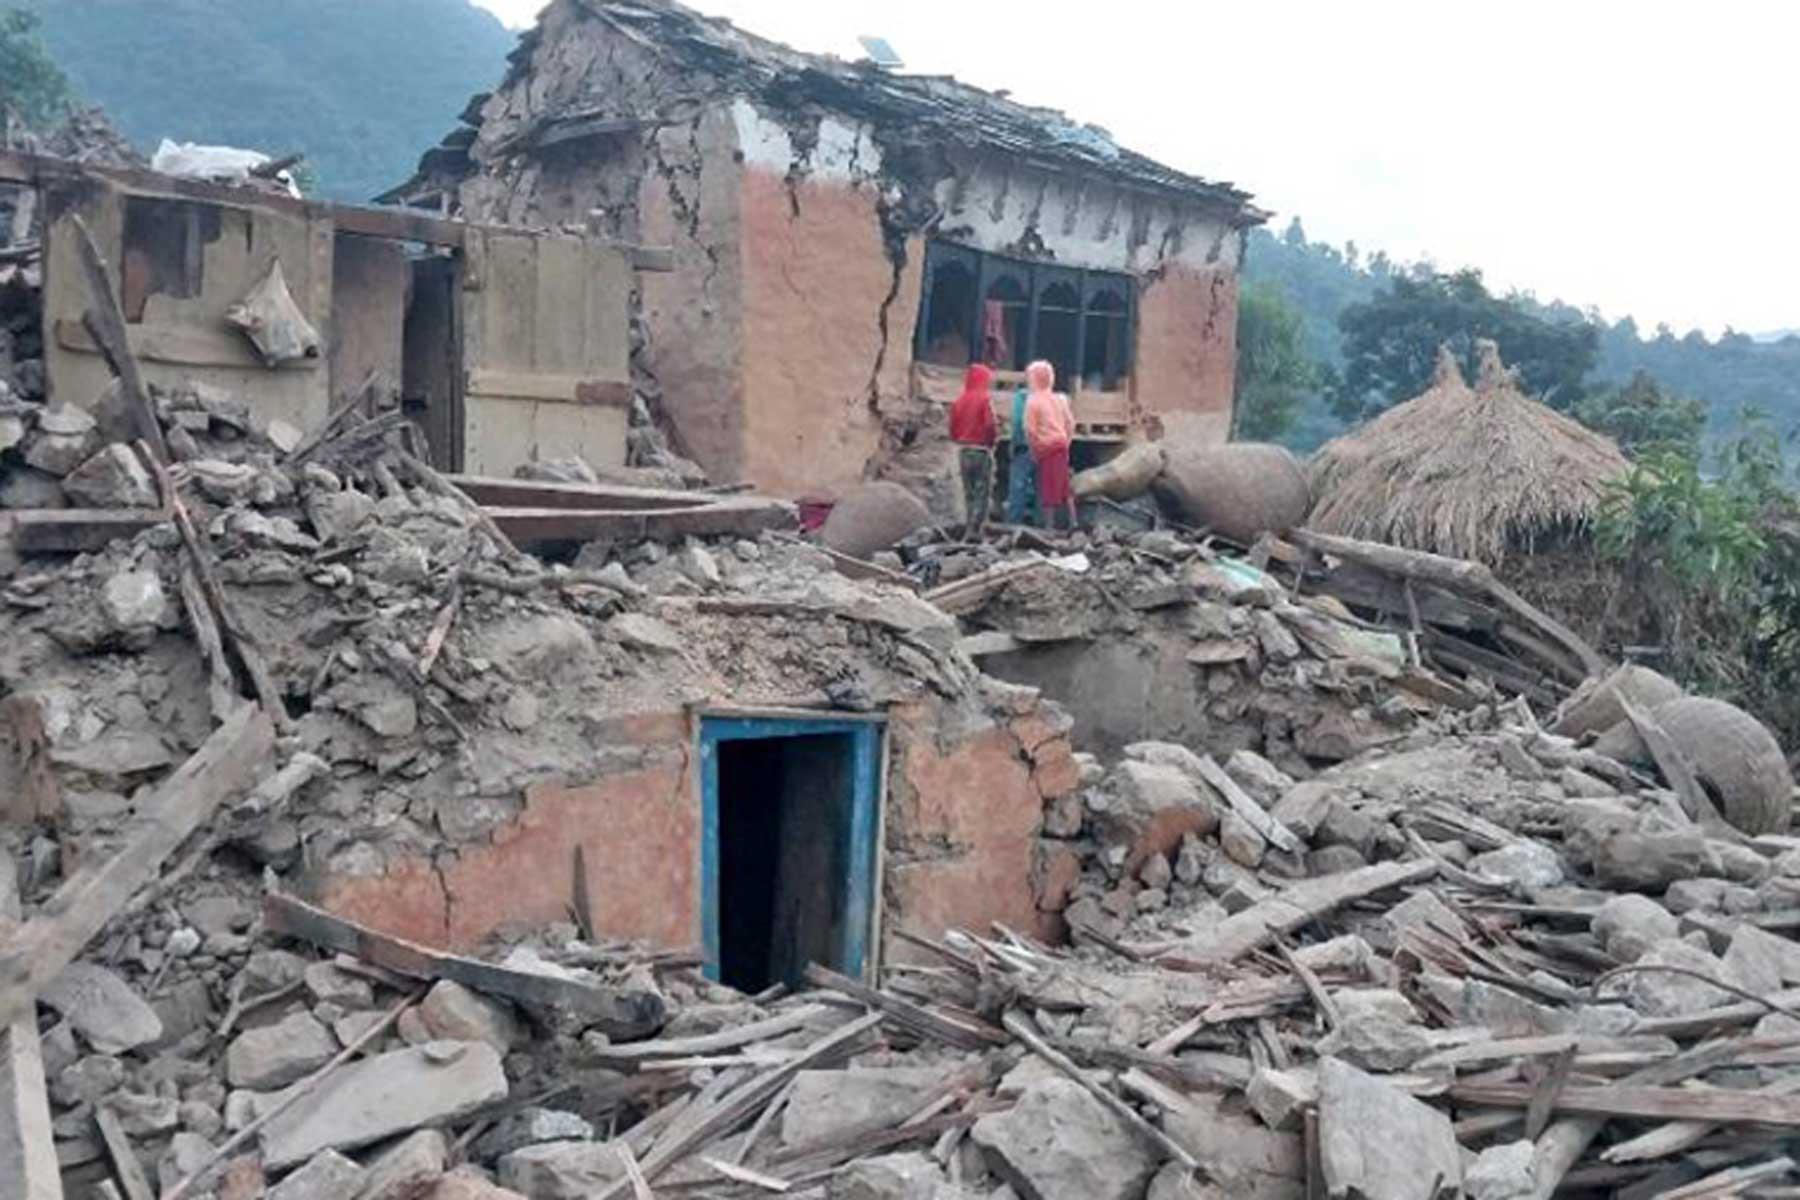 Daños en la aldea de Pubichouki, como se vio el día después del terremoto principal. Foto: onlinekhabar